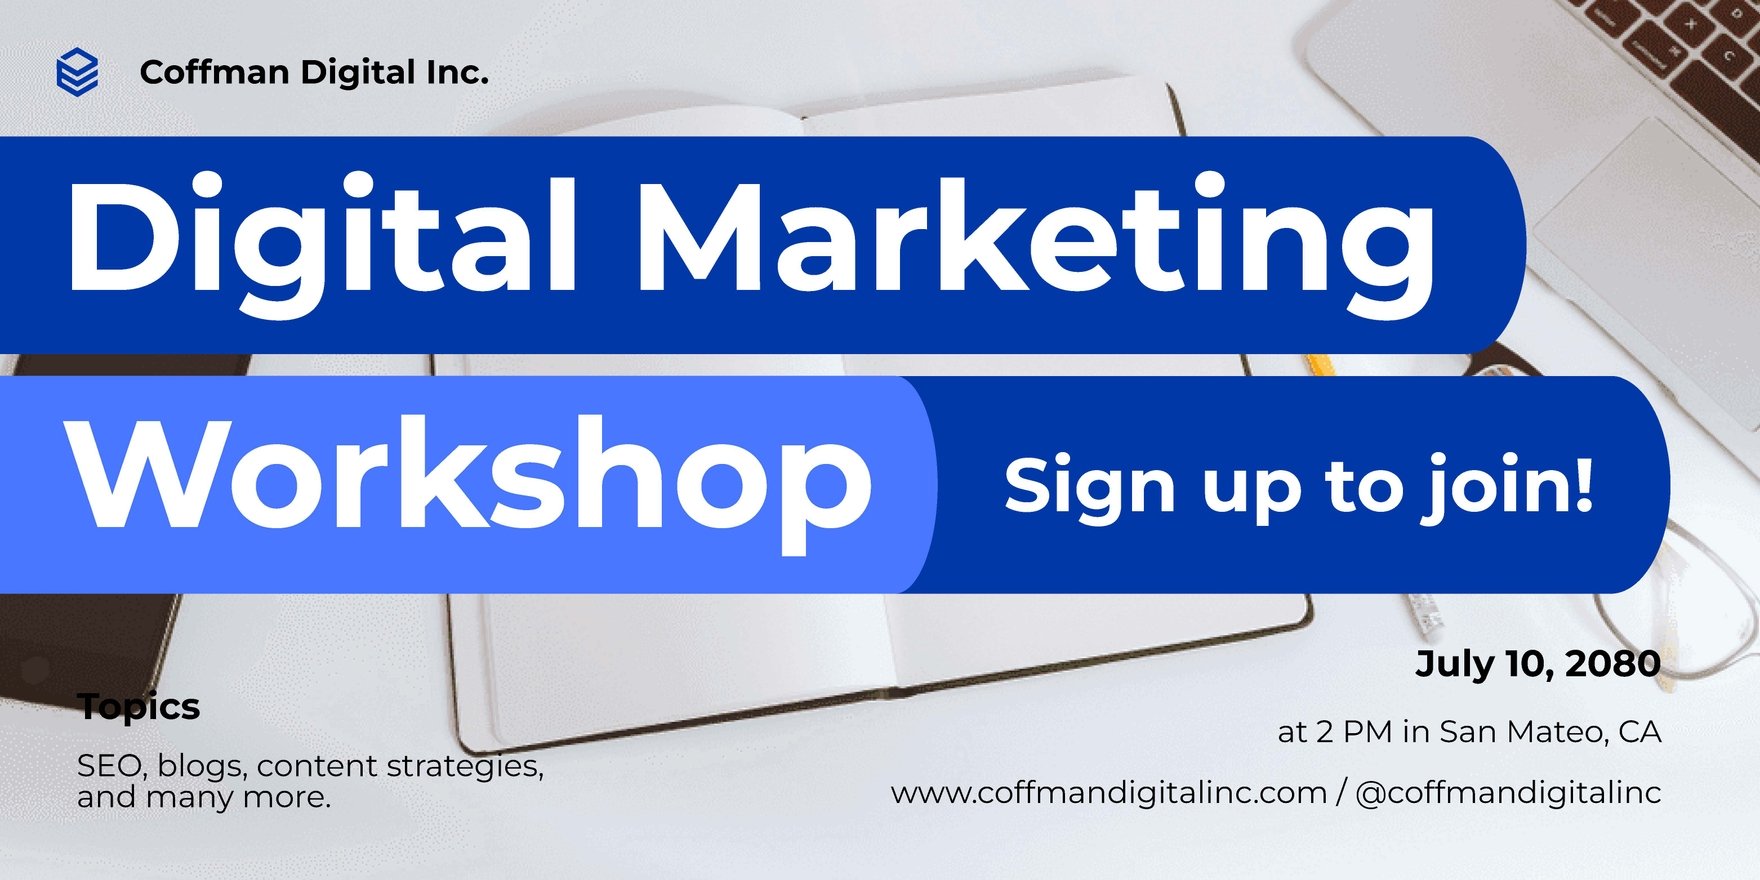 Digital Marketing Workshop Banner in Word, Illustrator, PSD